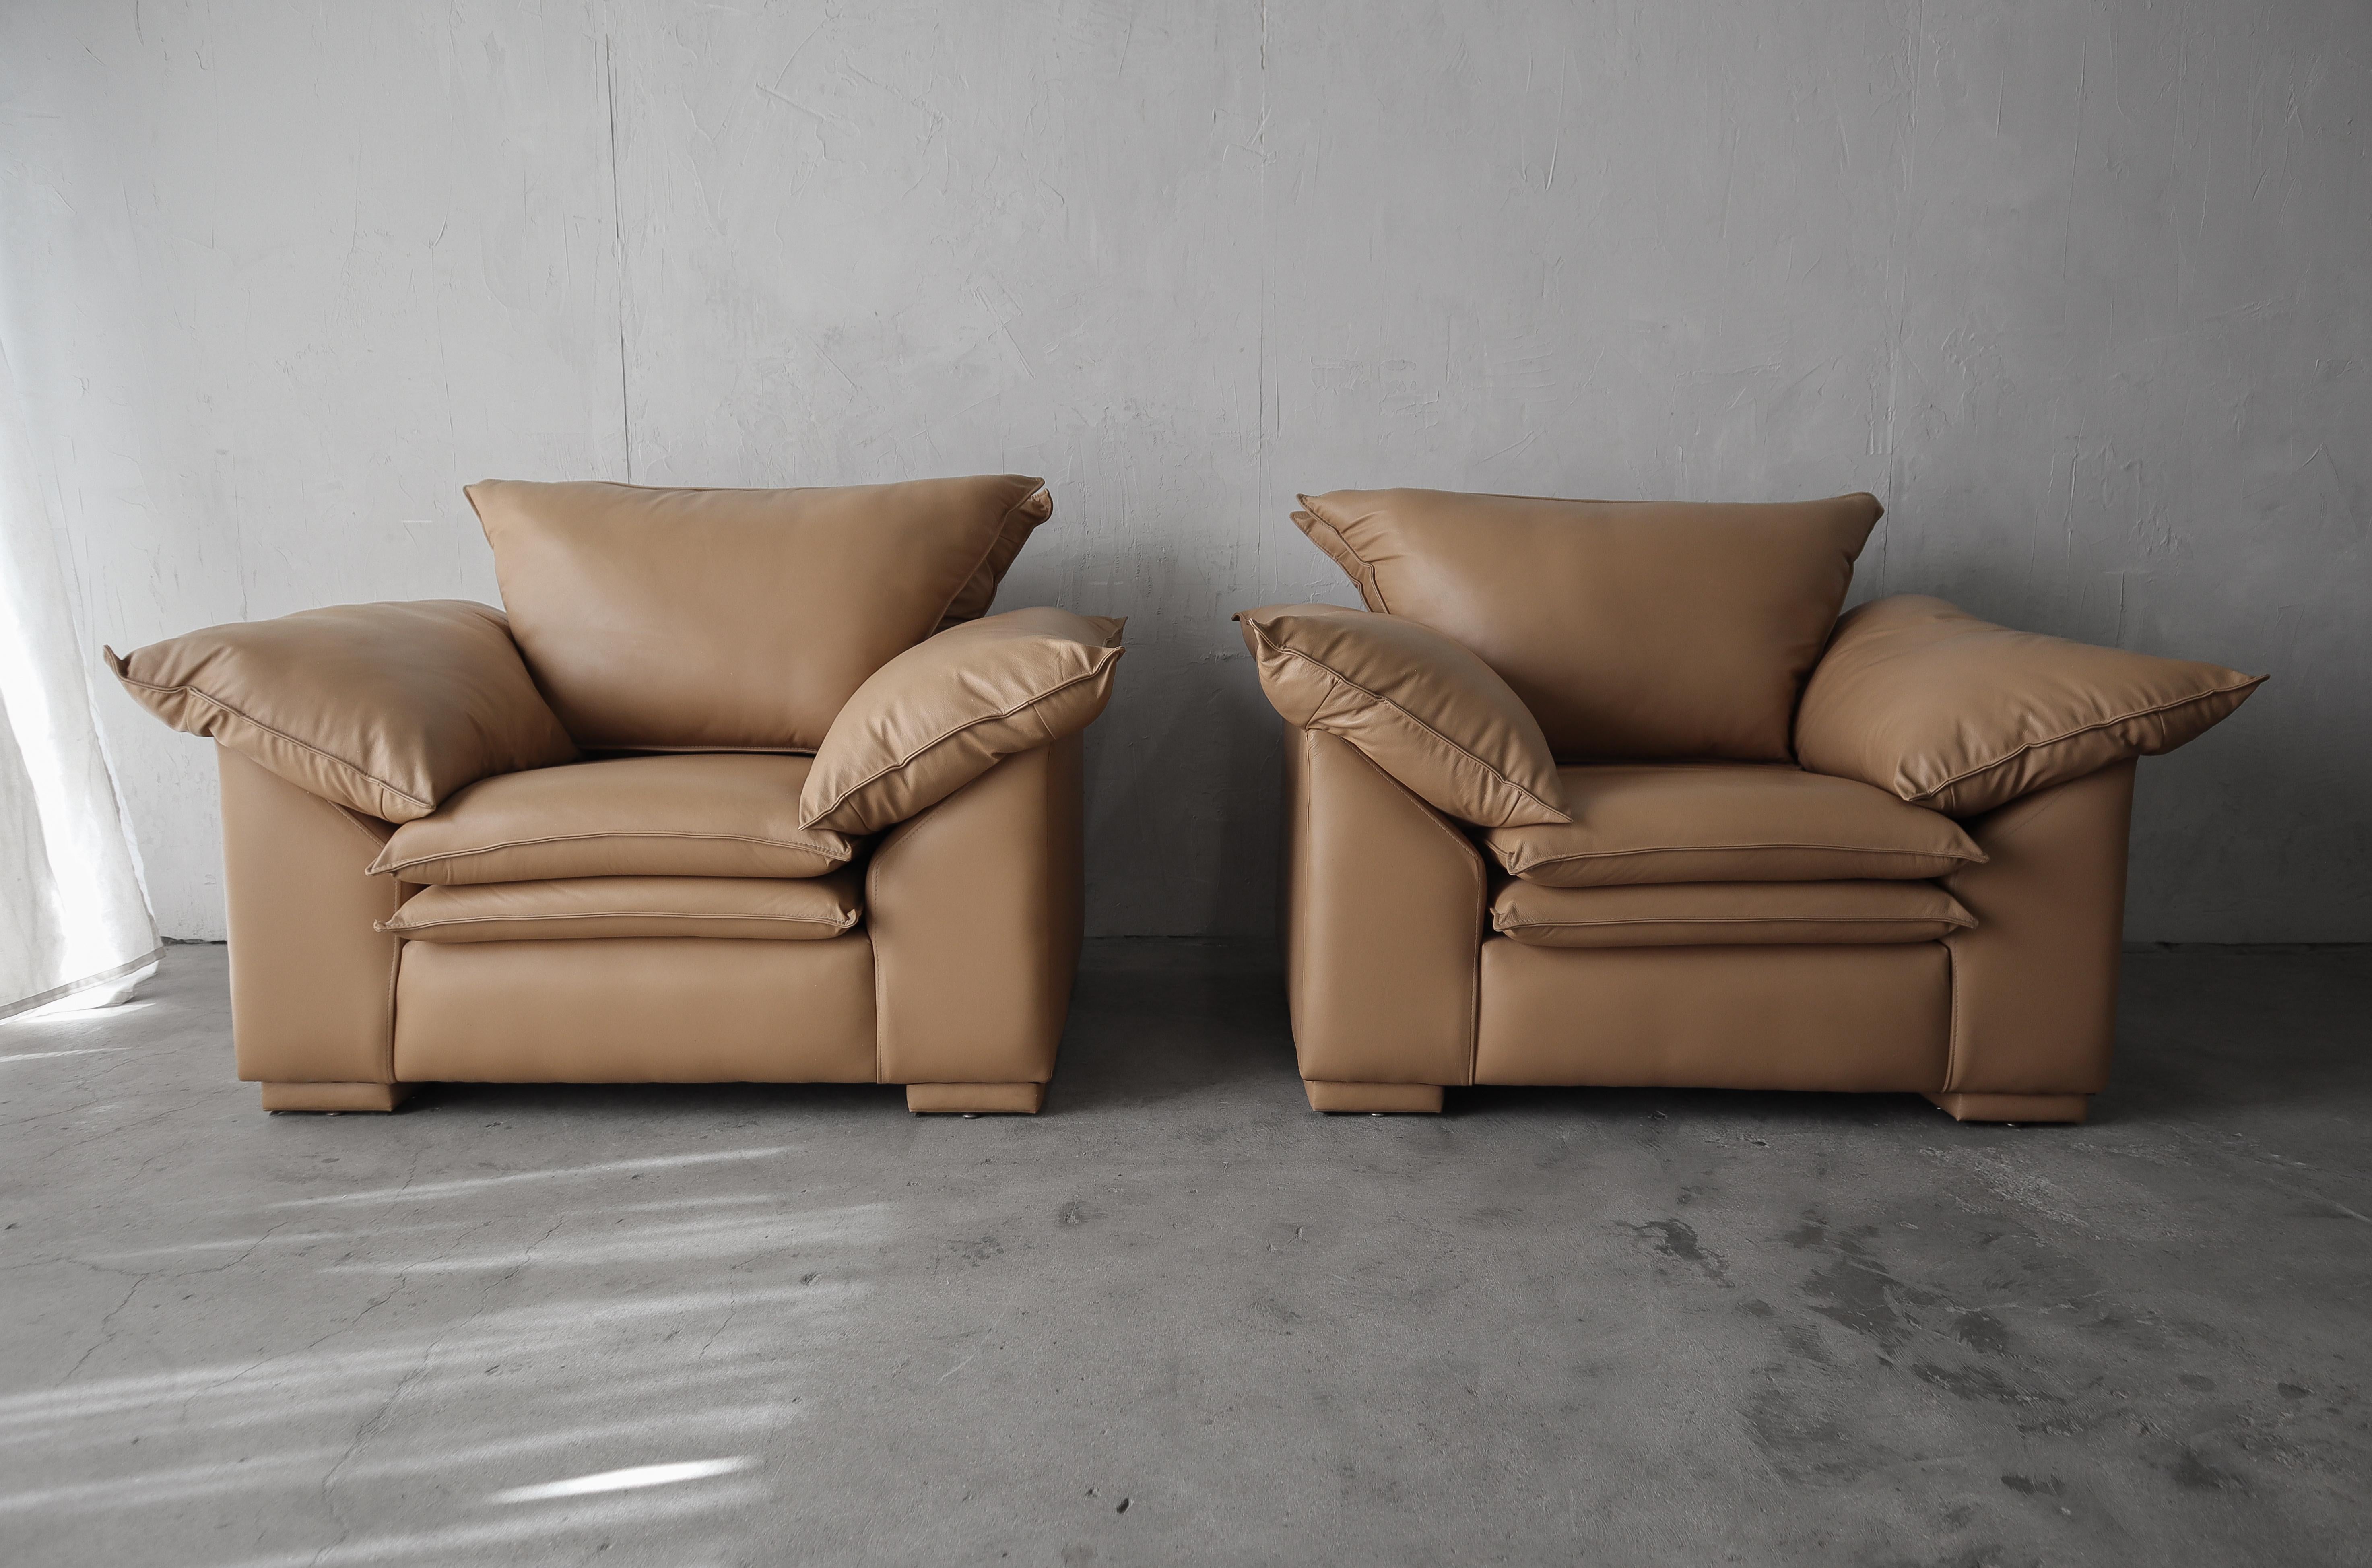 Superbe paire de chaises de salon en cuir post-moderne surdimensionnées aux lignes classiques, en superbe état.  Ces chaises sont l'incarnation du confort.

Les chaises présentent très peu de signes d'utilisation.  Prêt pour l'installation.